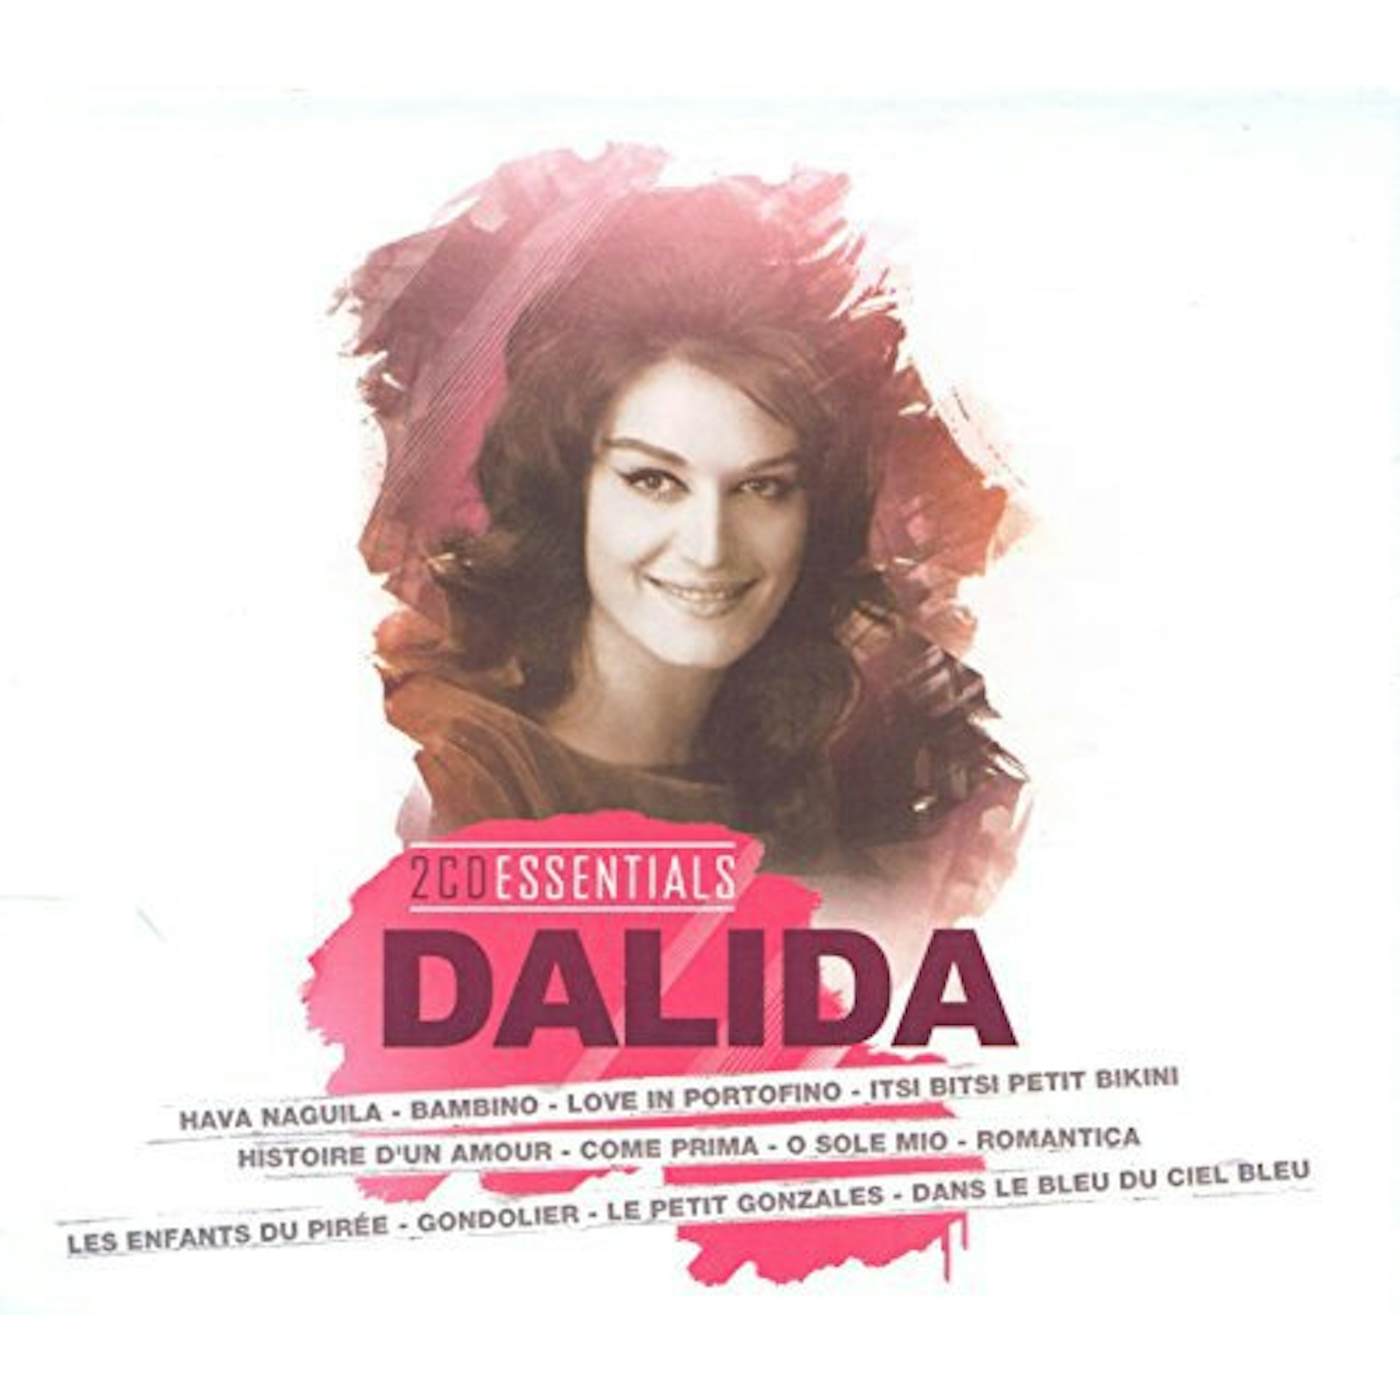 Коме прима. Далида поп музыка. CD Dalida: the Essential.